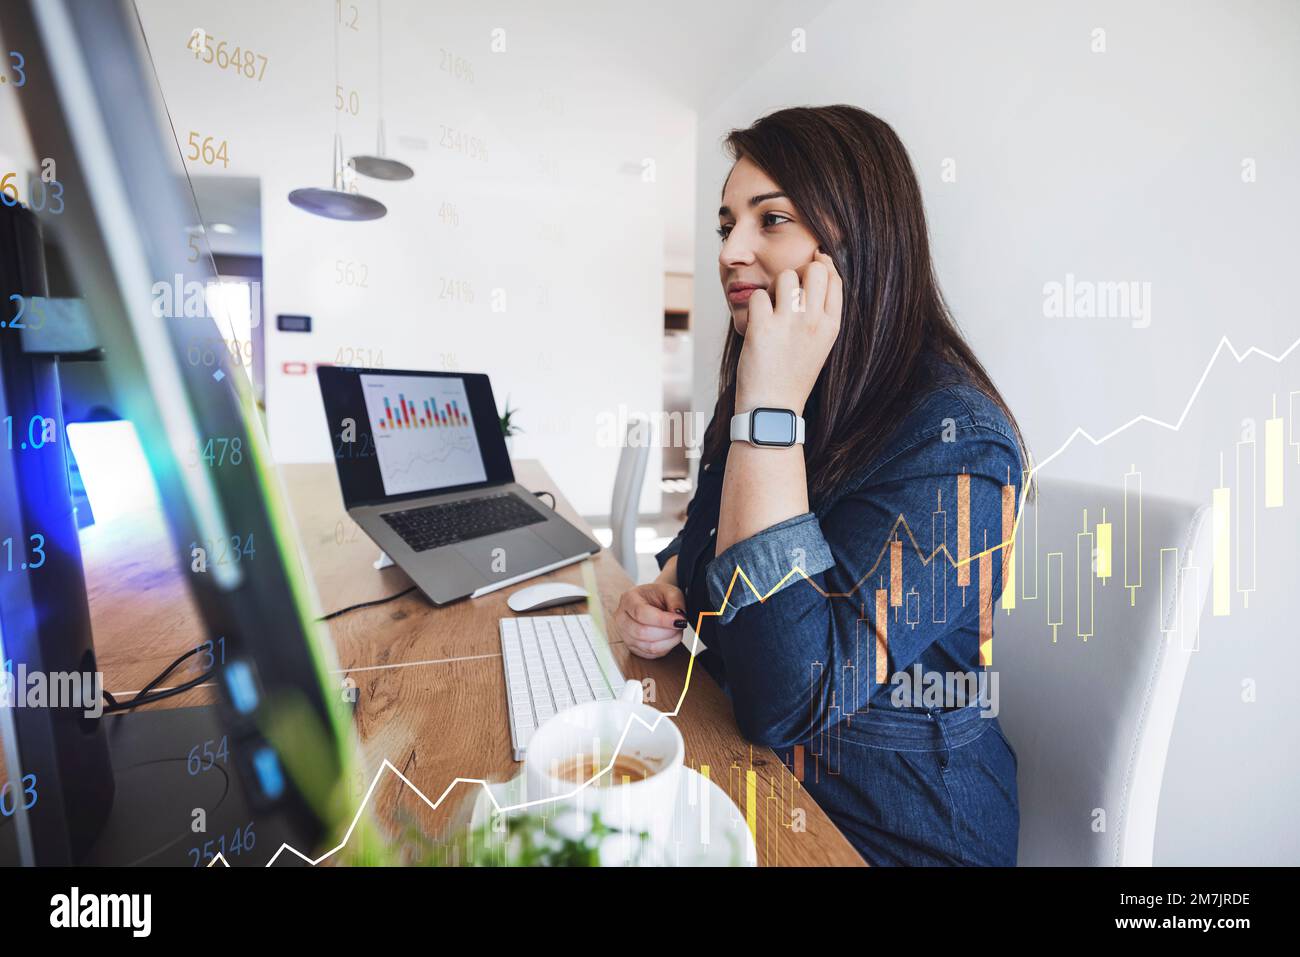 Junge weiße Frau, die in der Finanzwelt arbeitet, telefoniert am Telefon, während sie am Computer arbeitet Stockfoto